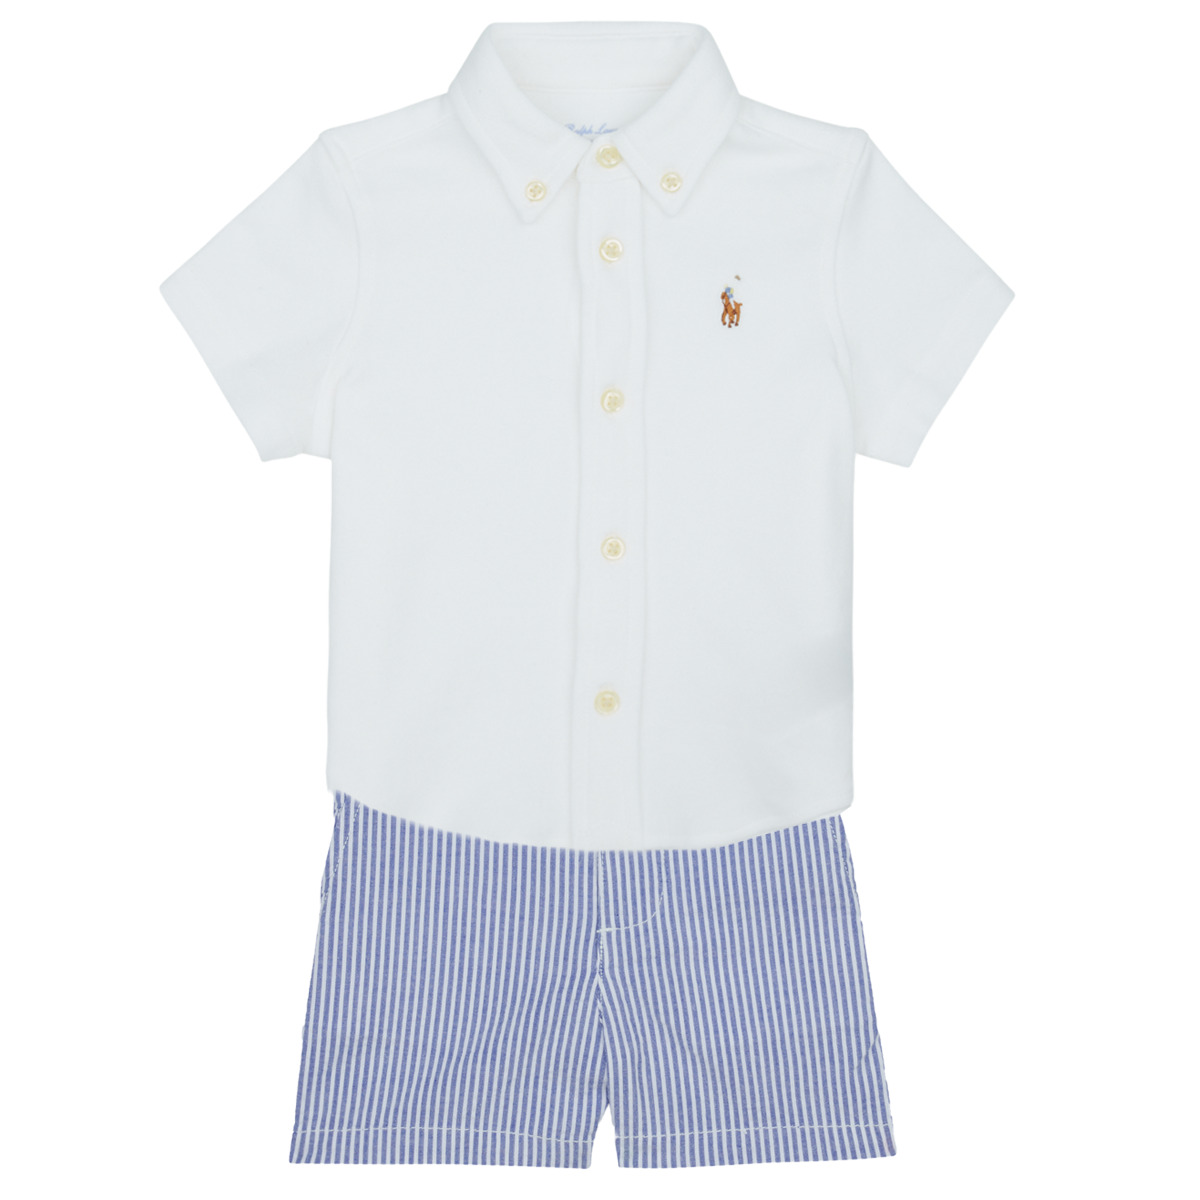 Textil Chlapecké Set Polo Ralph Lauren SSBDSRTSET-SETS-SHORT SET Modrá / Nebeská modř / Bílá